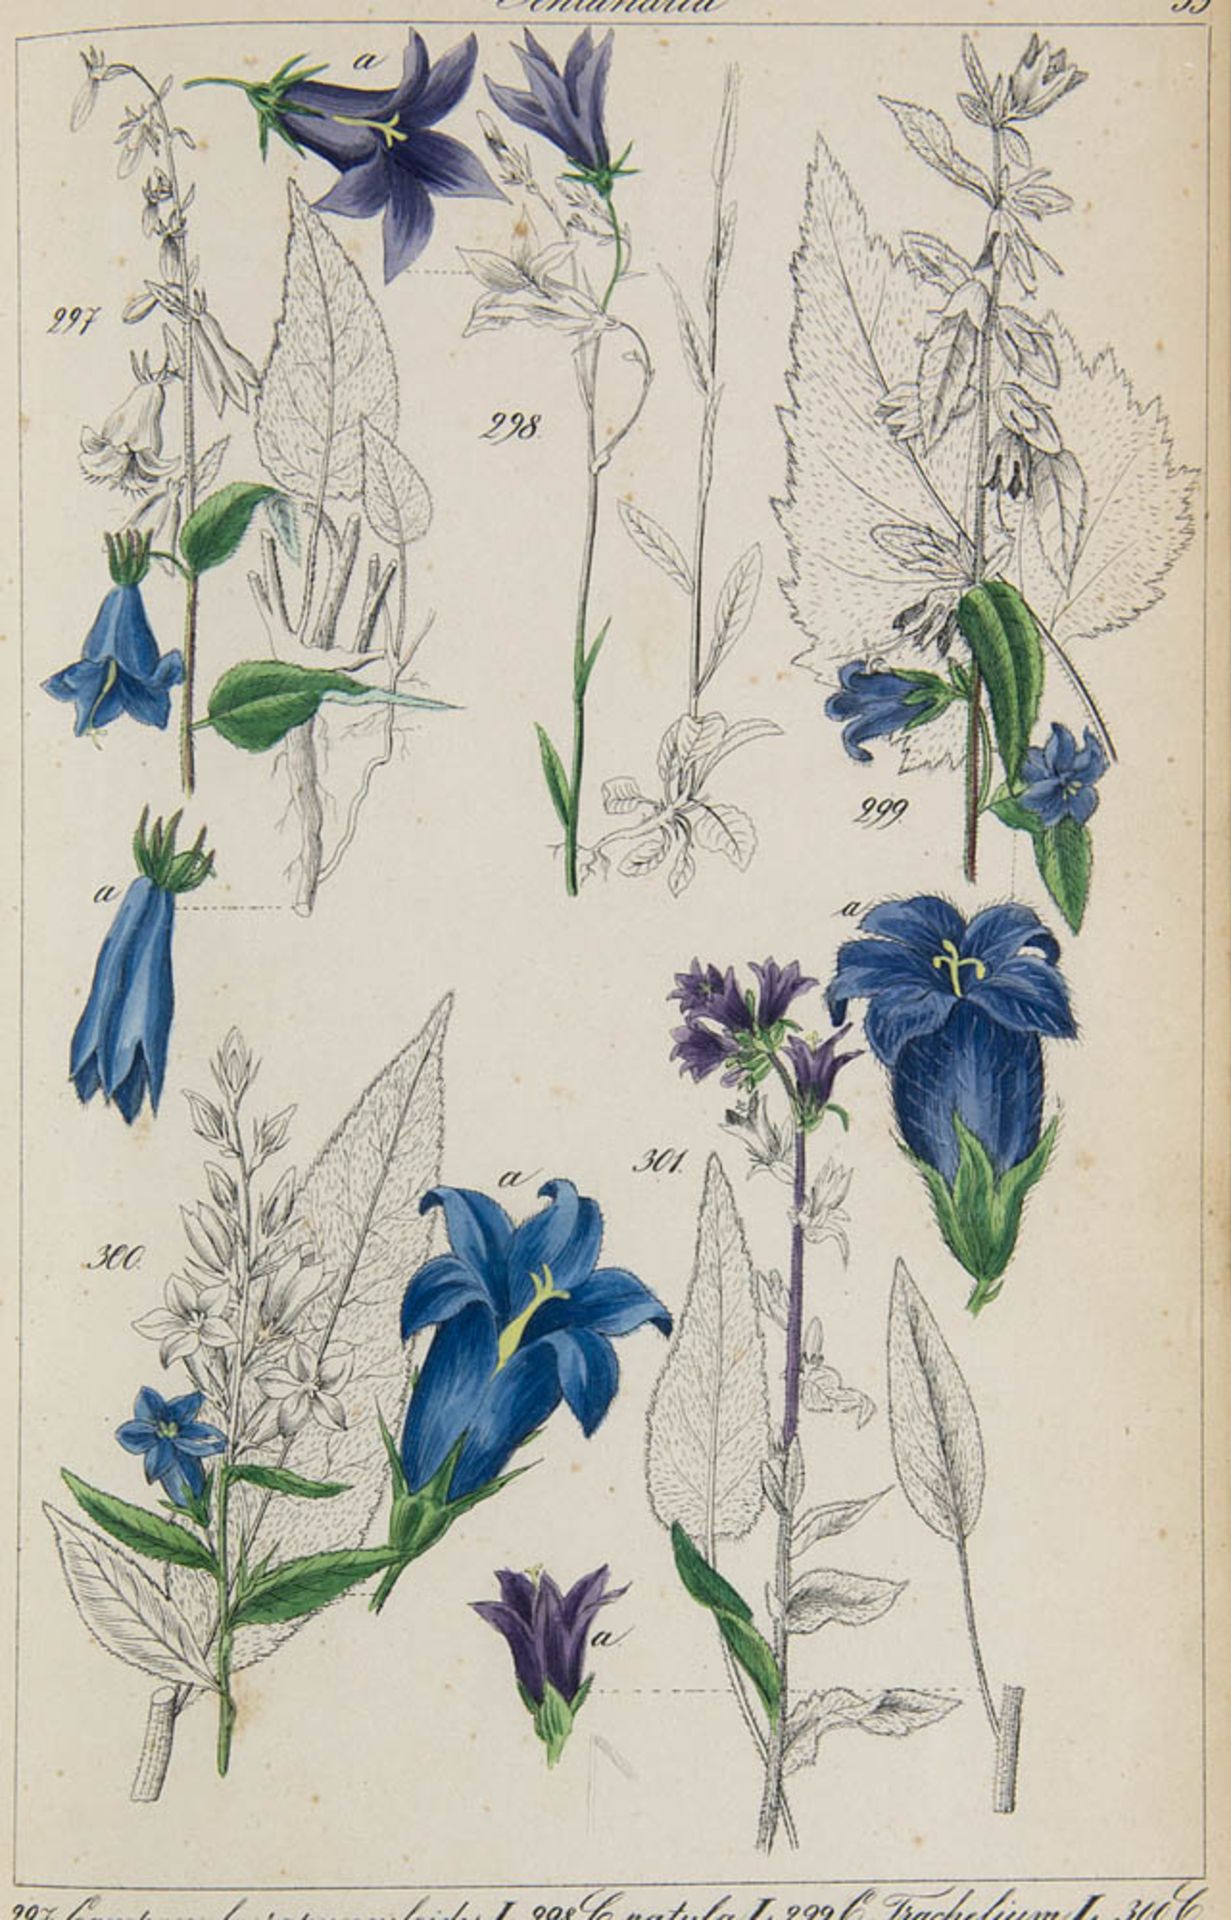 Botanik - - Lorek, Christian Gottlieb. Flora Prussica. Mit 241 teilkolor. lithog. Tafeln mit 1269